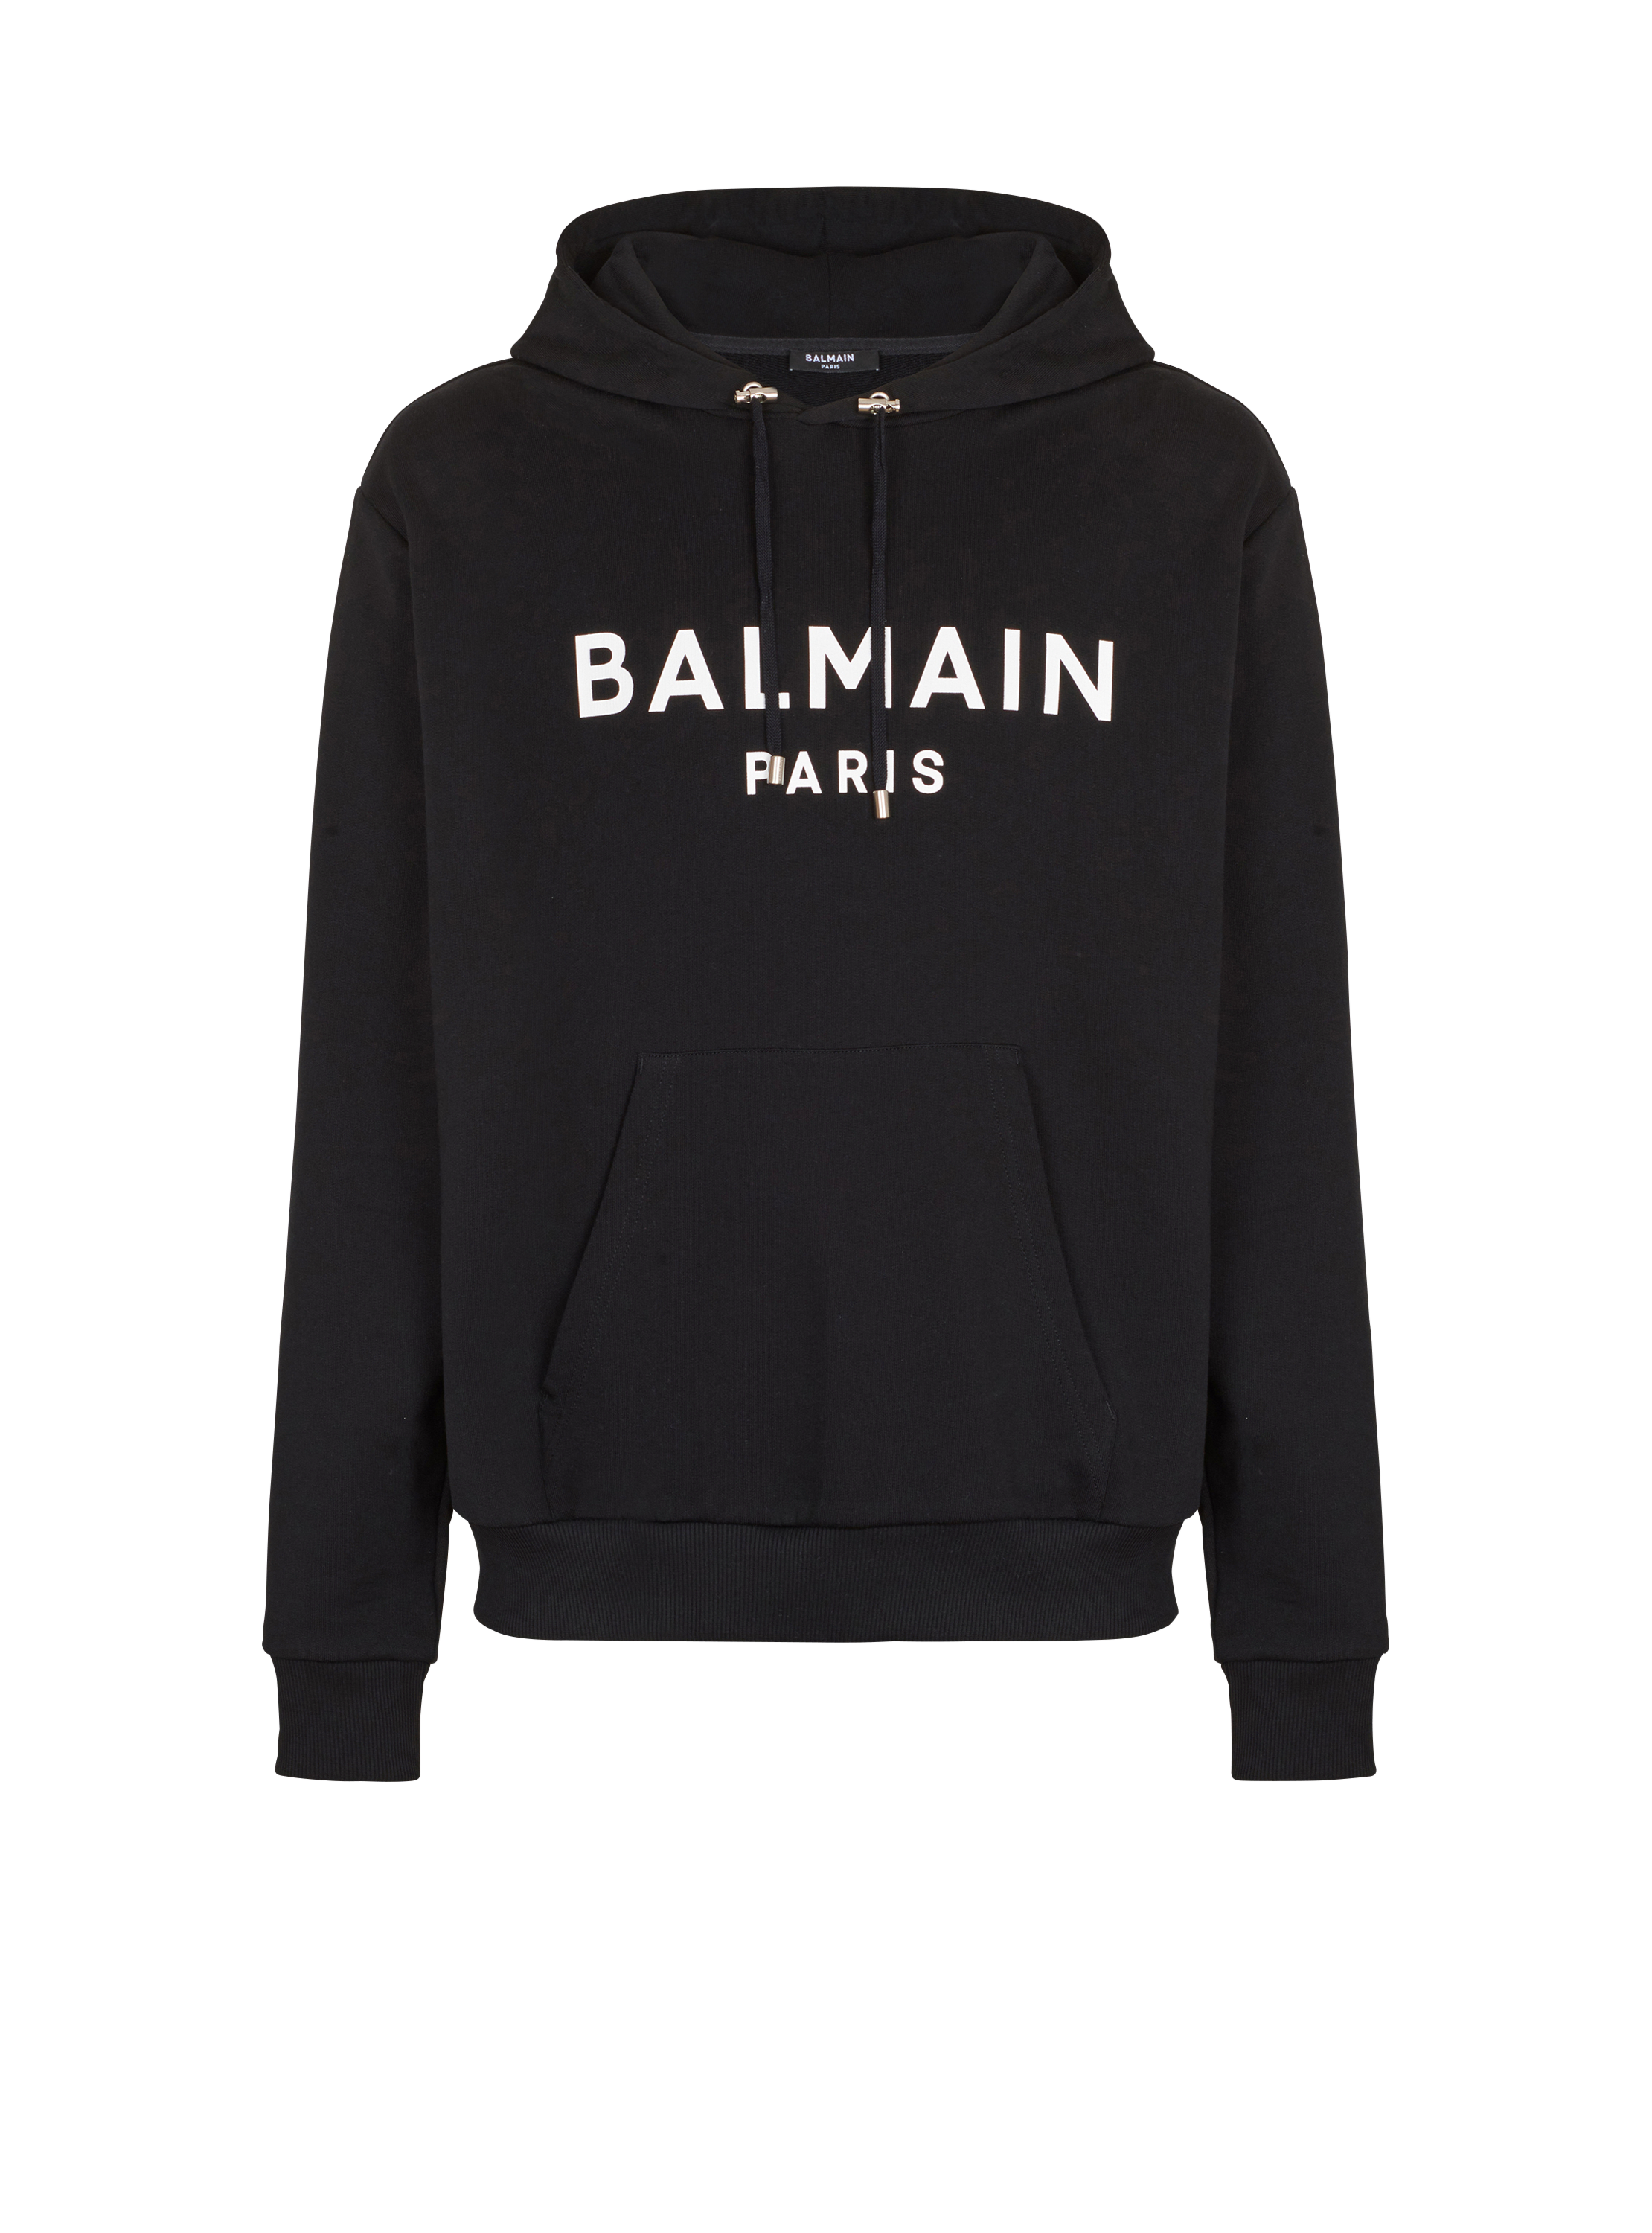 Sweat-shirt à capuche en coton imprimé logo Balmain, noir, hi-res